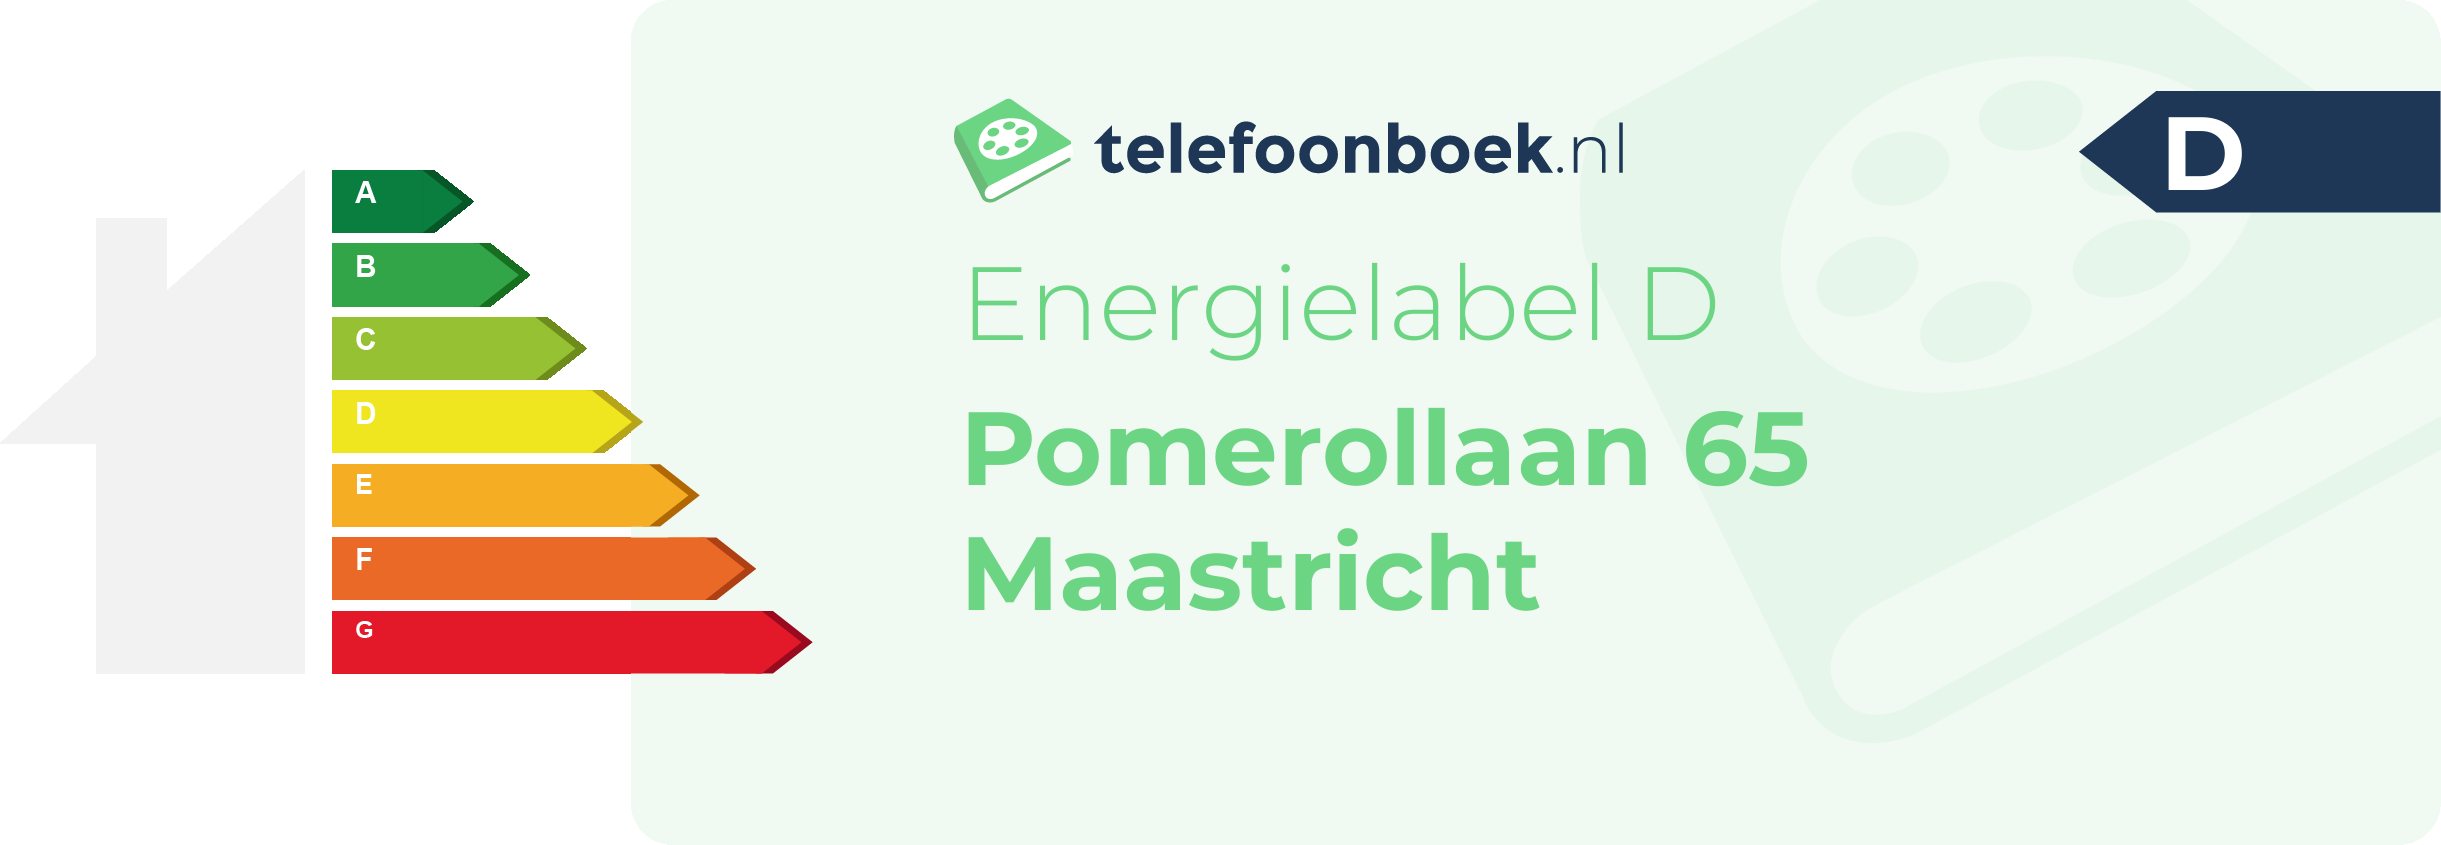 Energielabel Pomerollaan 65 Maastricht